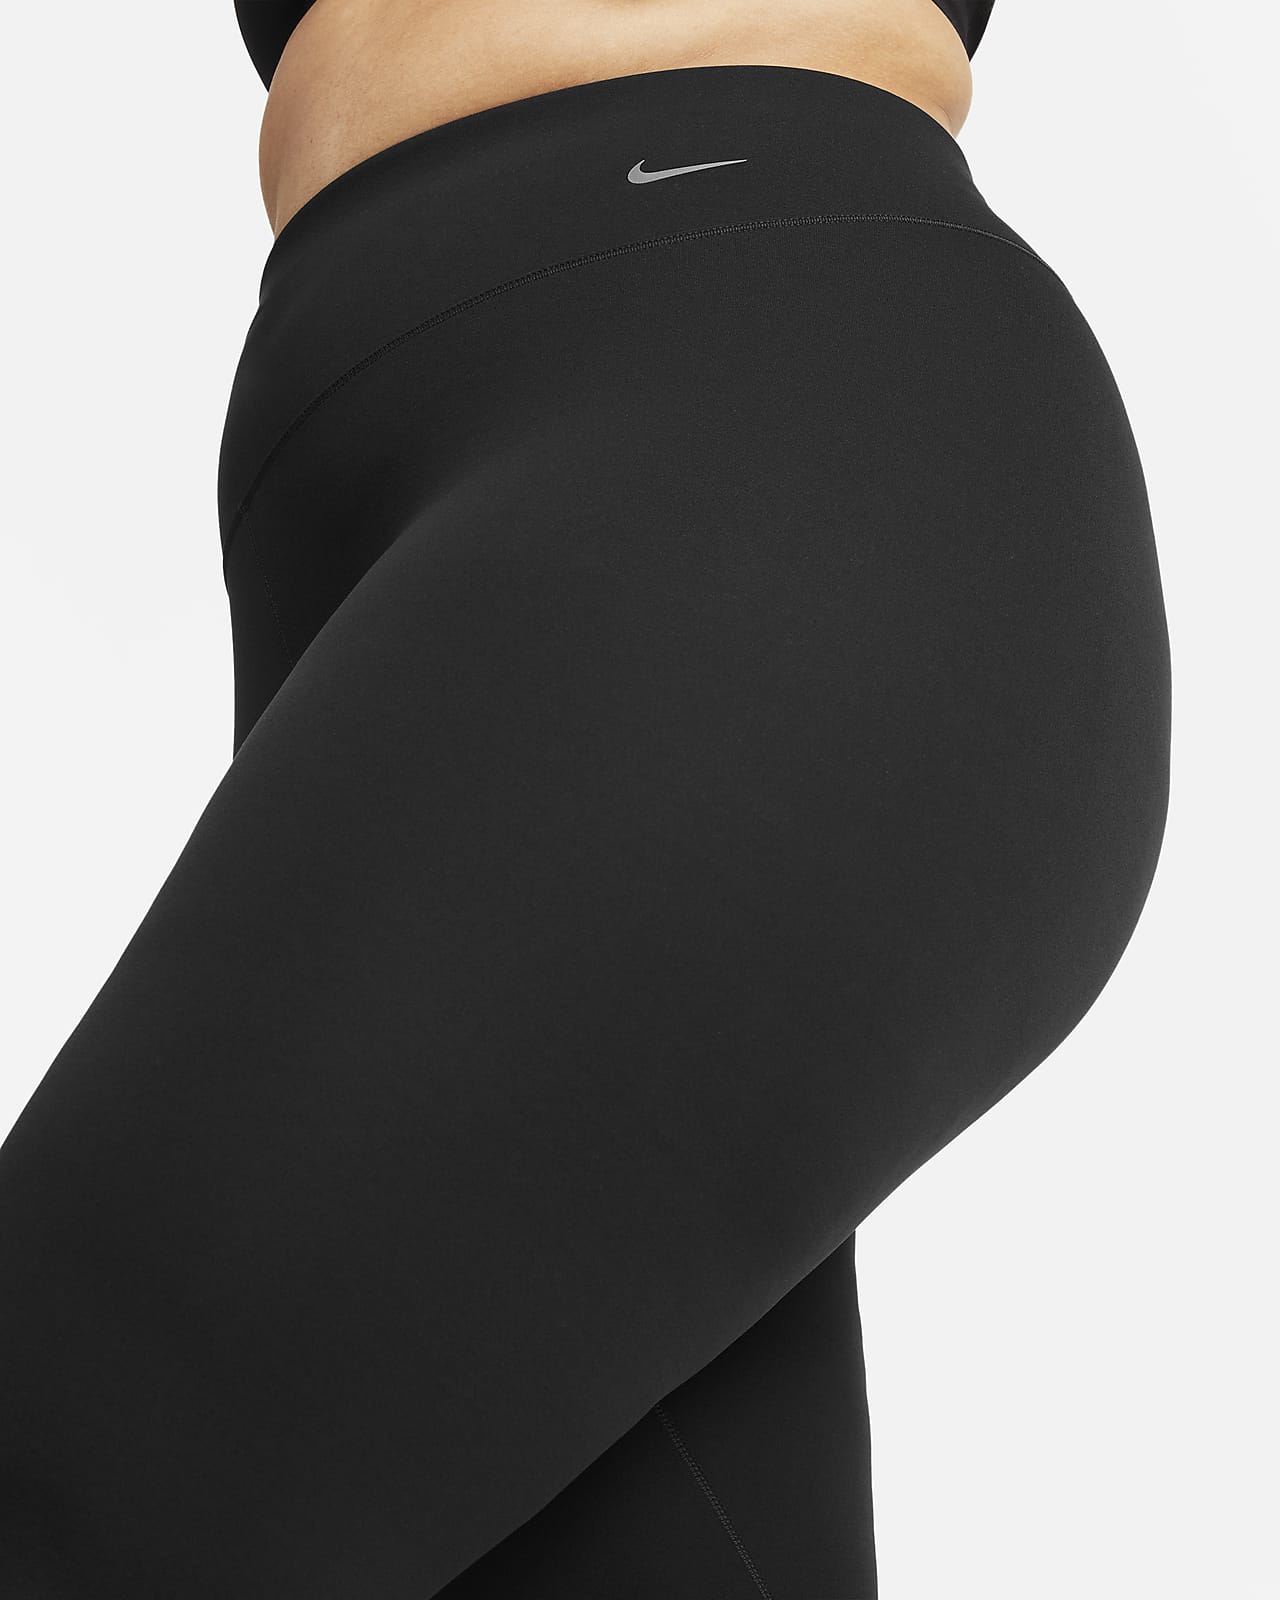 Nike Yoga Dri-FIT Women's Metallic Trim Tank Black (Plus Size) 2X 3X DN6495